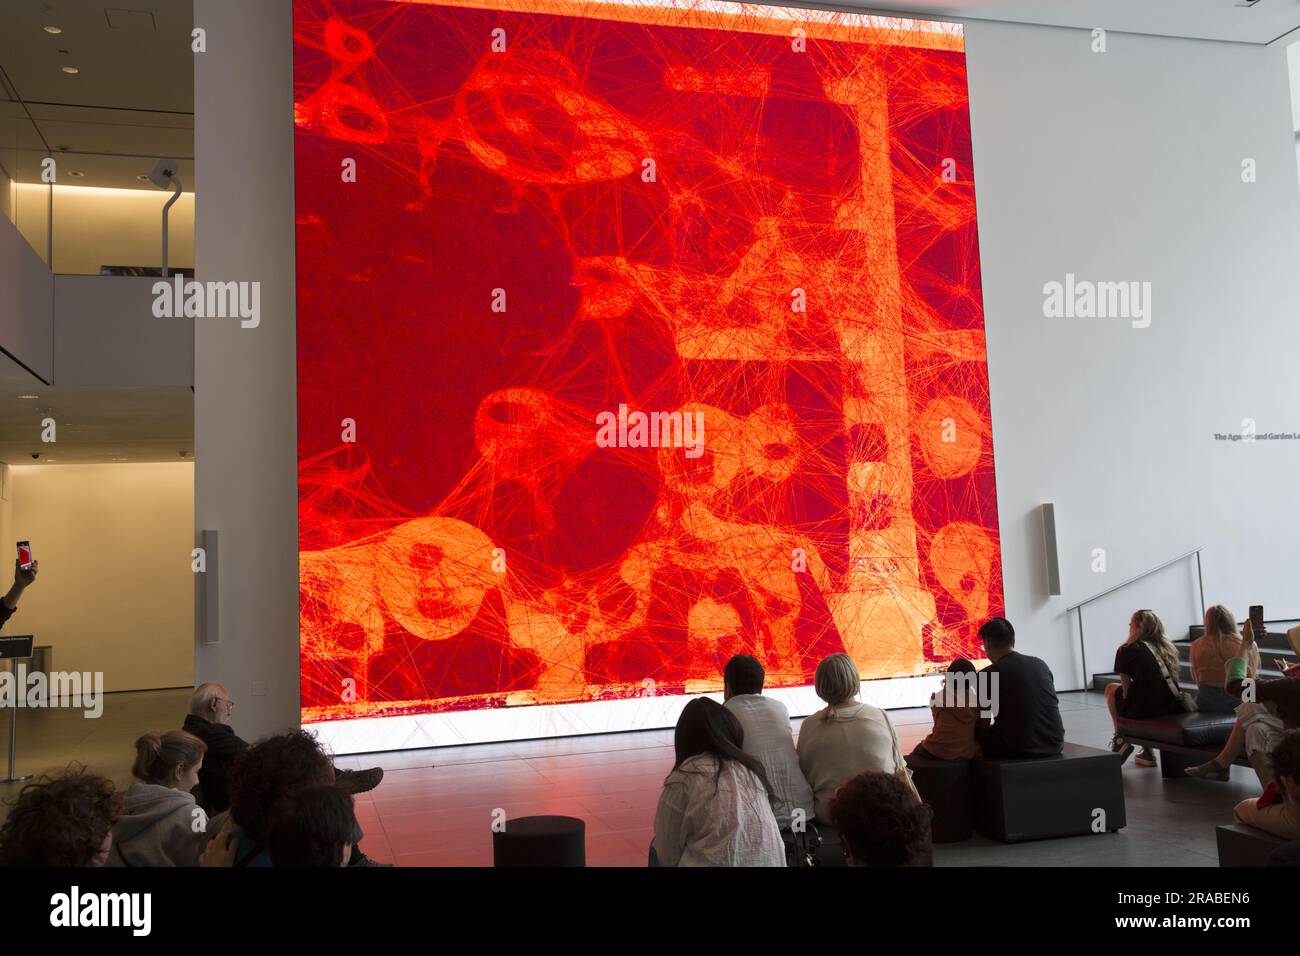 Refik Anadol: UnSupervised: UnSupervised bietet ein digitales Kunstwerk, das sich in Echtzeit entfaltet und kontinuierlich neue Formen erzeugt, die die Zuschauer in einer Großinstallation umhüllen. Das gesamte Material stammt aus der MoMA-Kunstsammlung. Lobby des Museum of Modern Art, New York City. Stockfoto